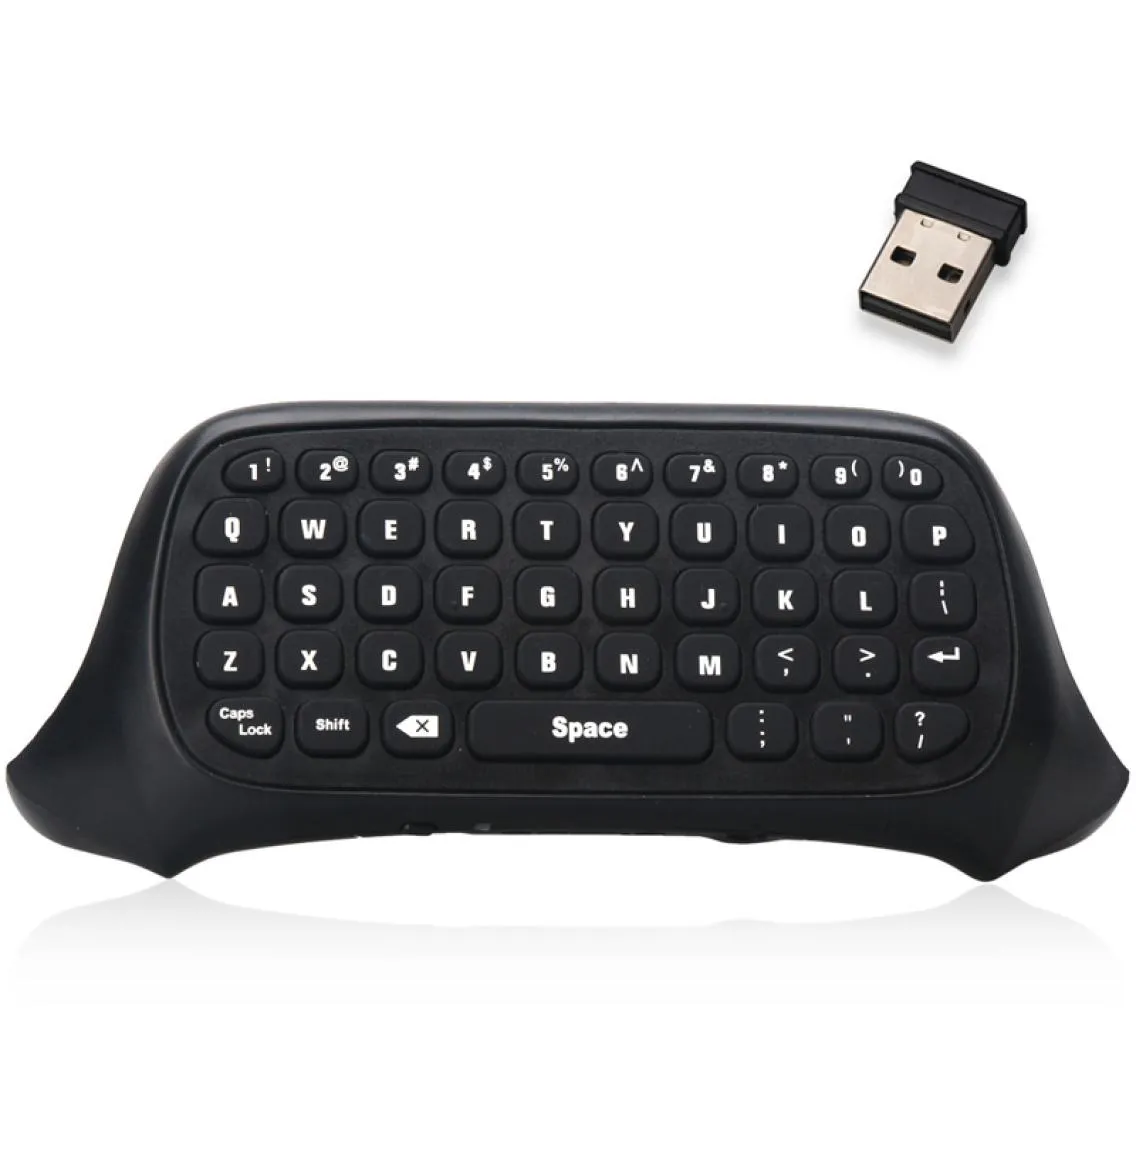 게임 액세서리 게임 보이 게임 Xbox One Xbox One S Controller 용 Mini Wireless 키보드 DOBE Mini Wireless Keyboard 24G ChatPad MeAasge hange GamePad5861895